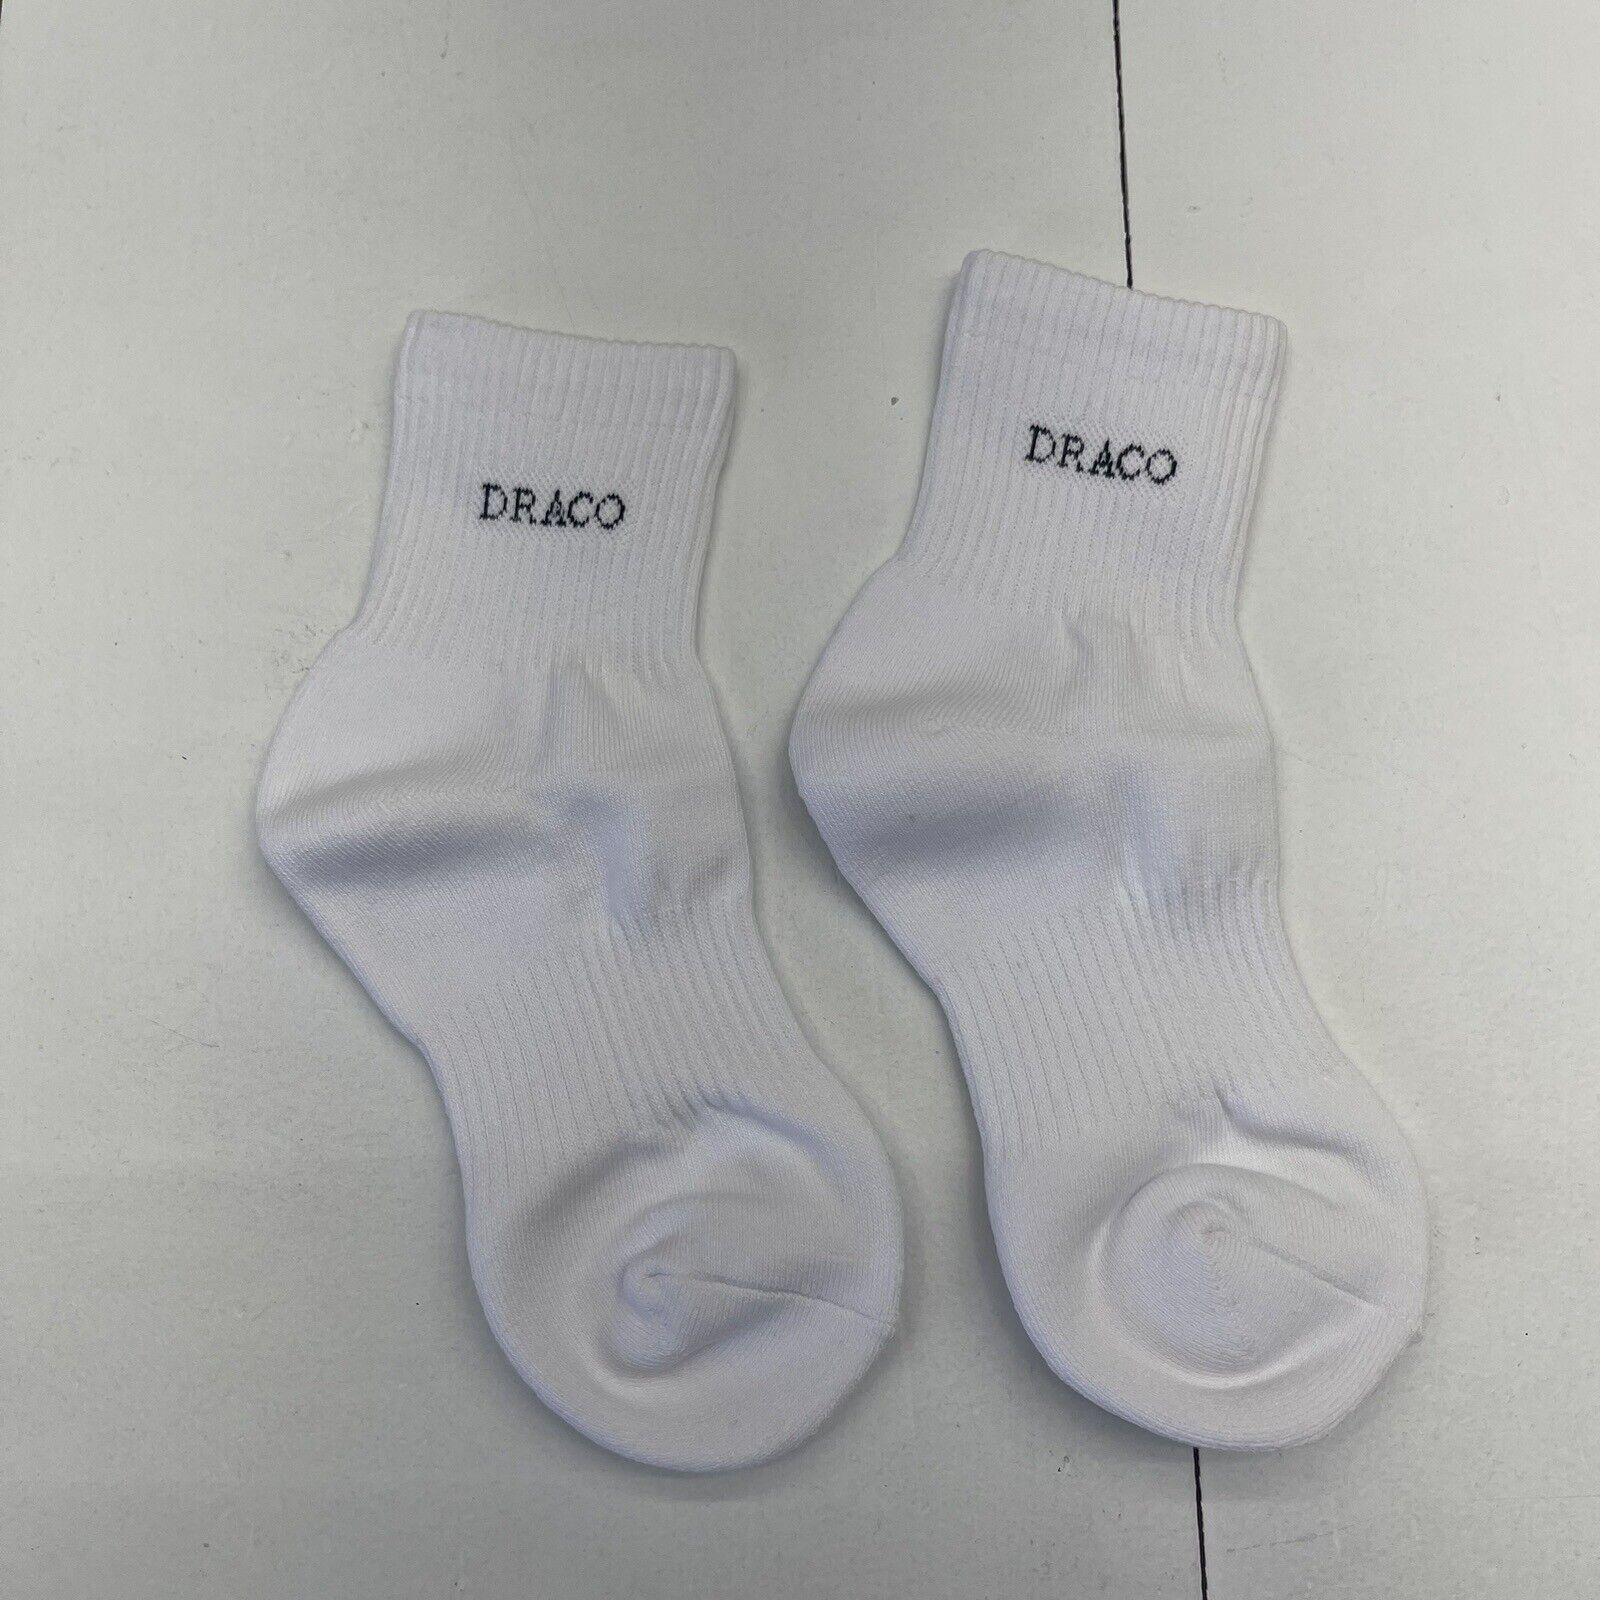 Draco Slides White Ankle Socks Mens Size OS New